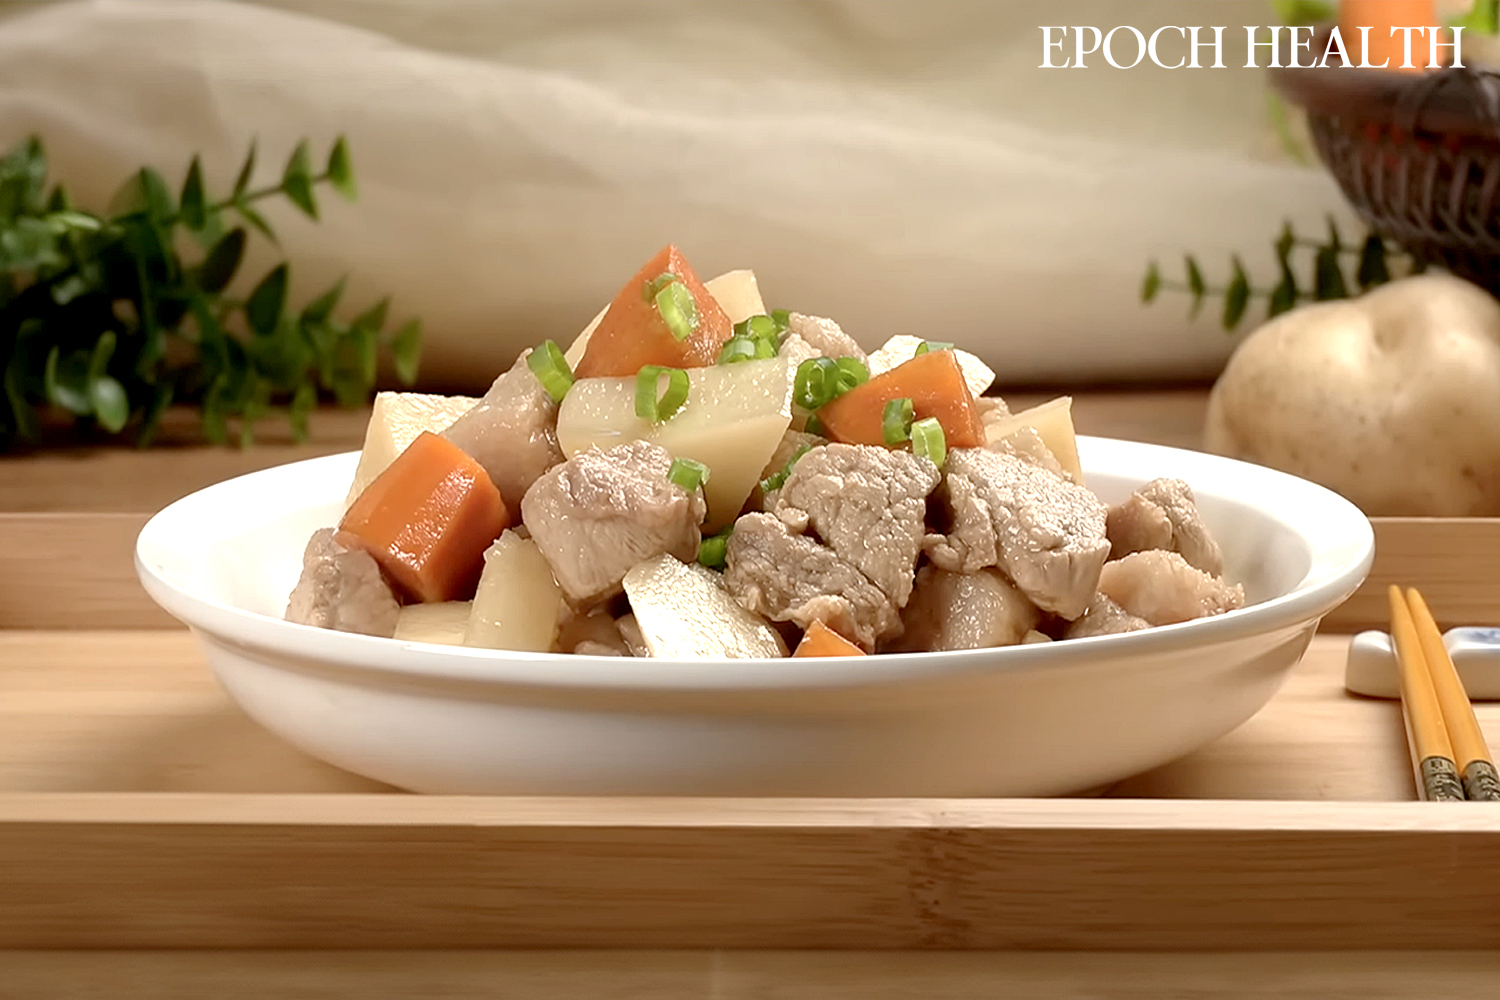 Thịt heo hầm khoai tây là món ăn truyền thống được biết đến với tác dụng bổ tỳ, dưỡng vị. (Ảnh: The Epoch Times)